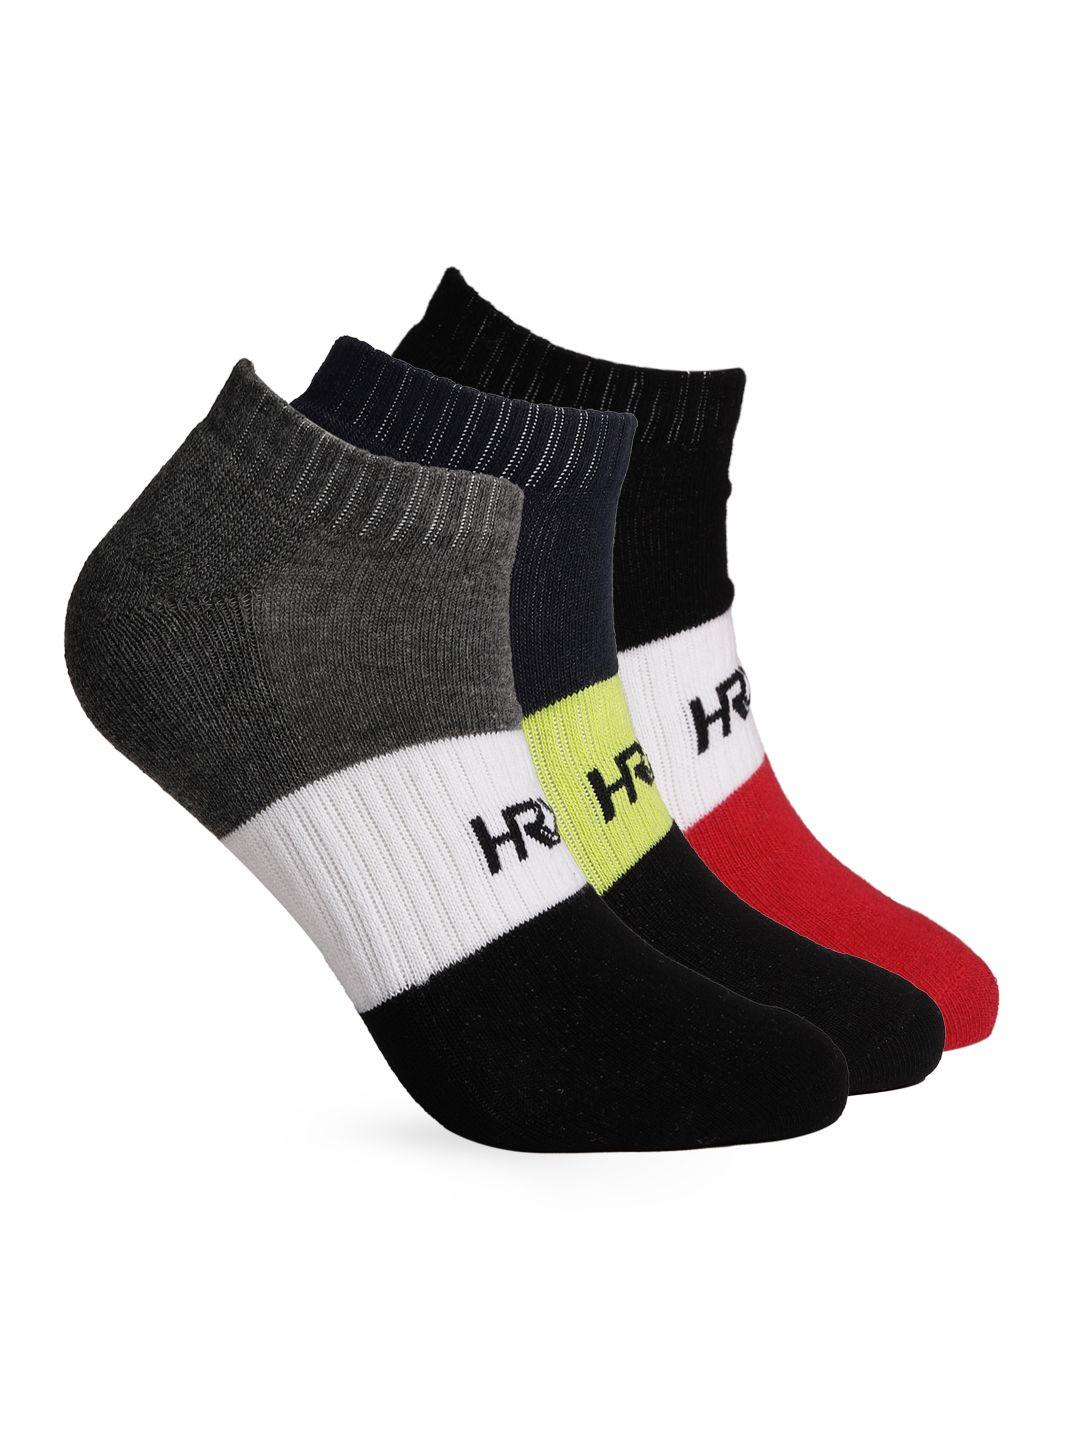 hrx by hrithik roshan men set of 3 ankle-length socks